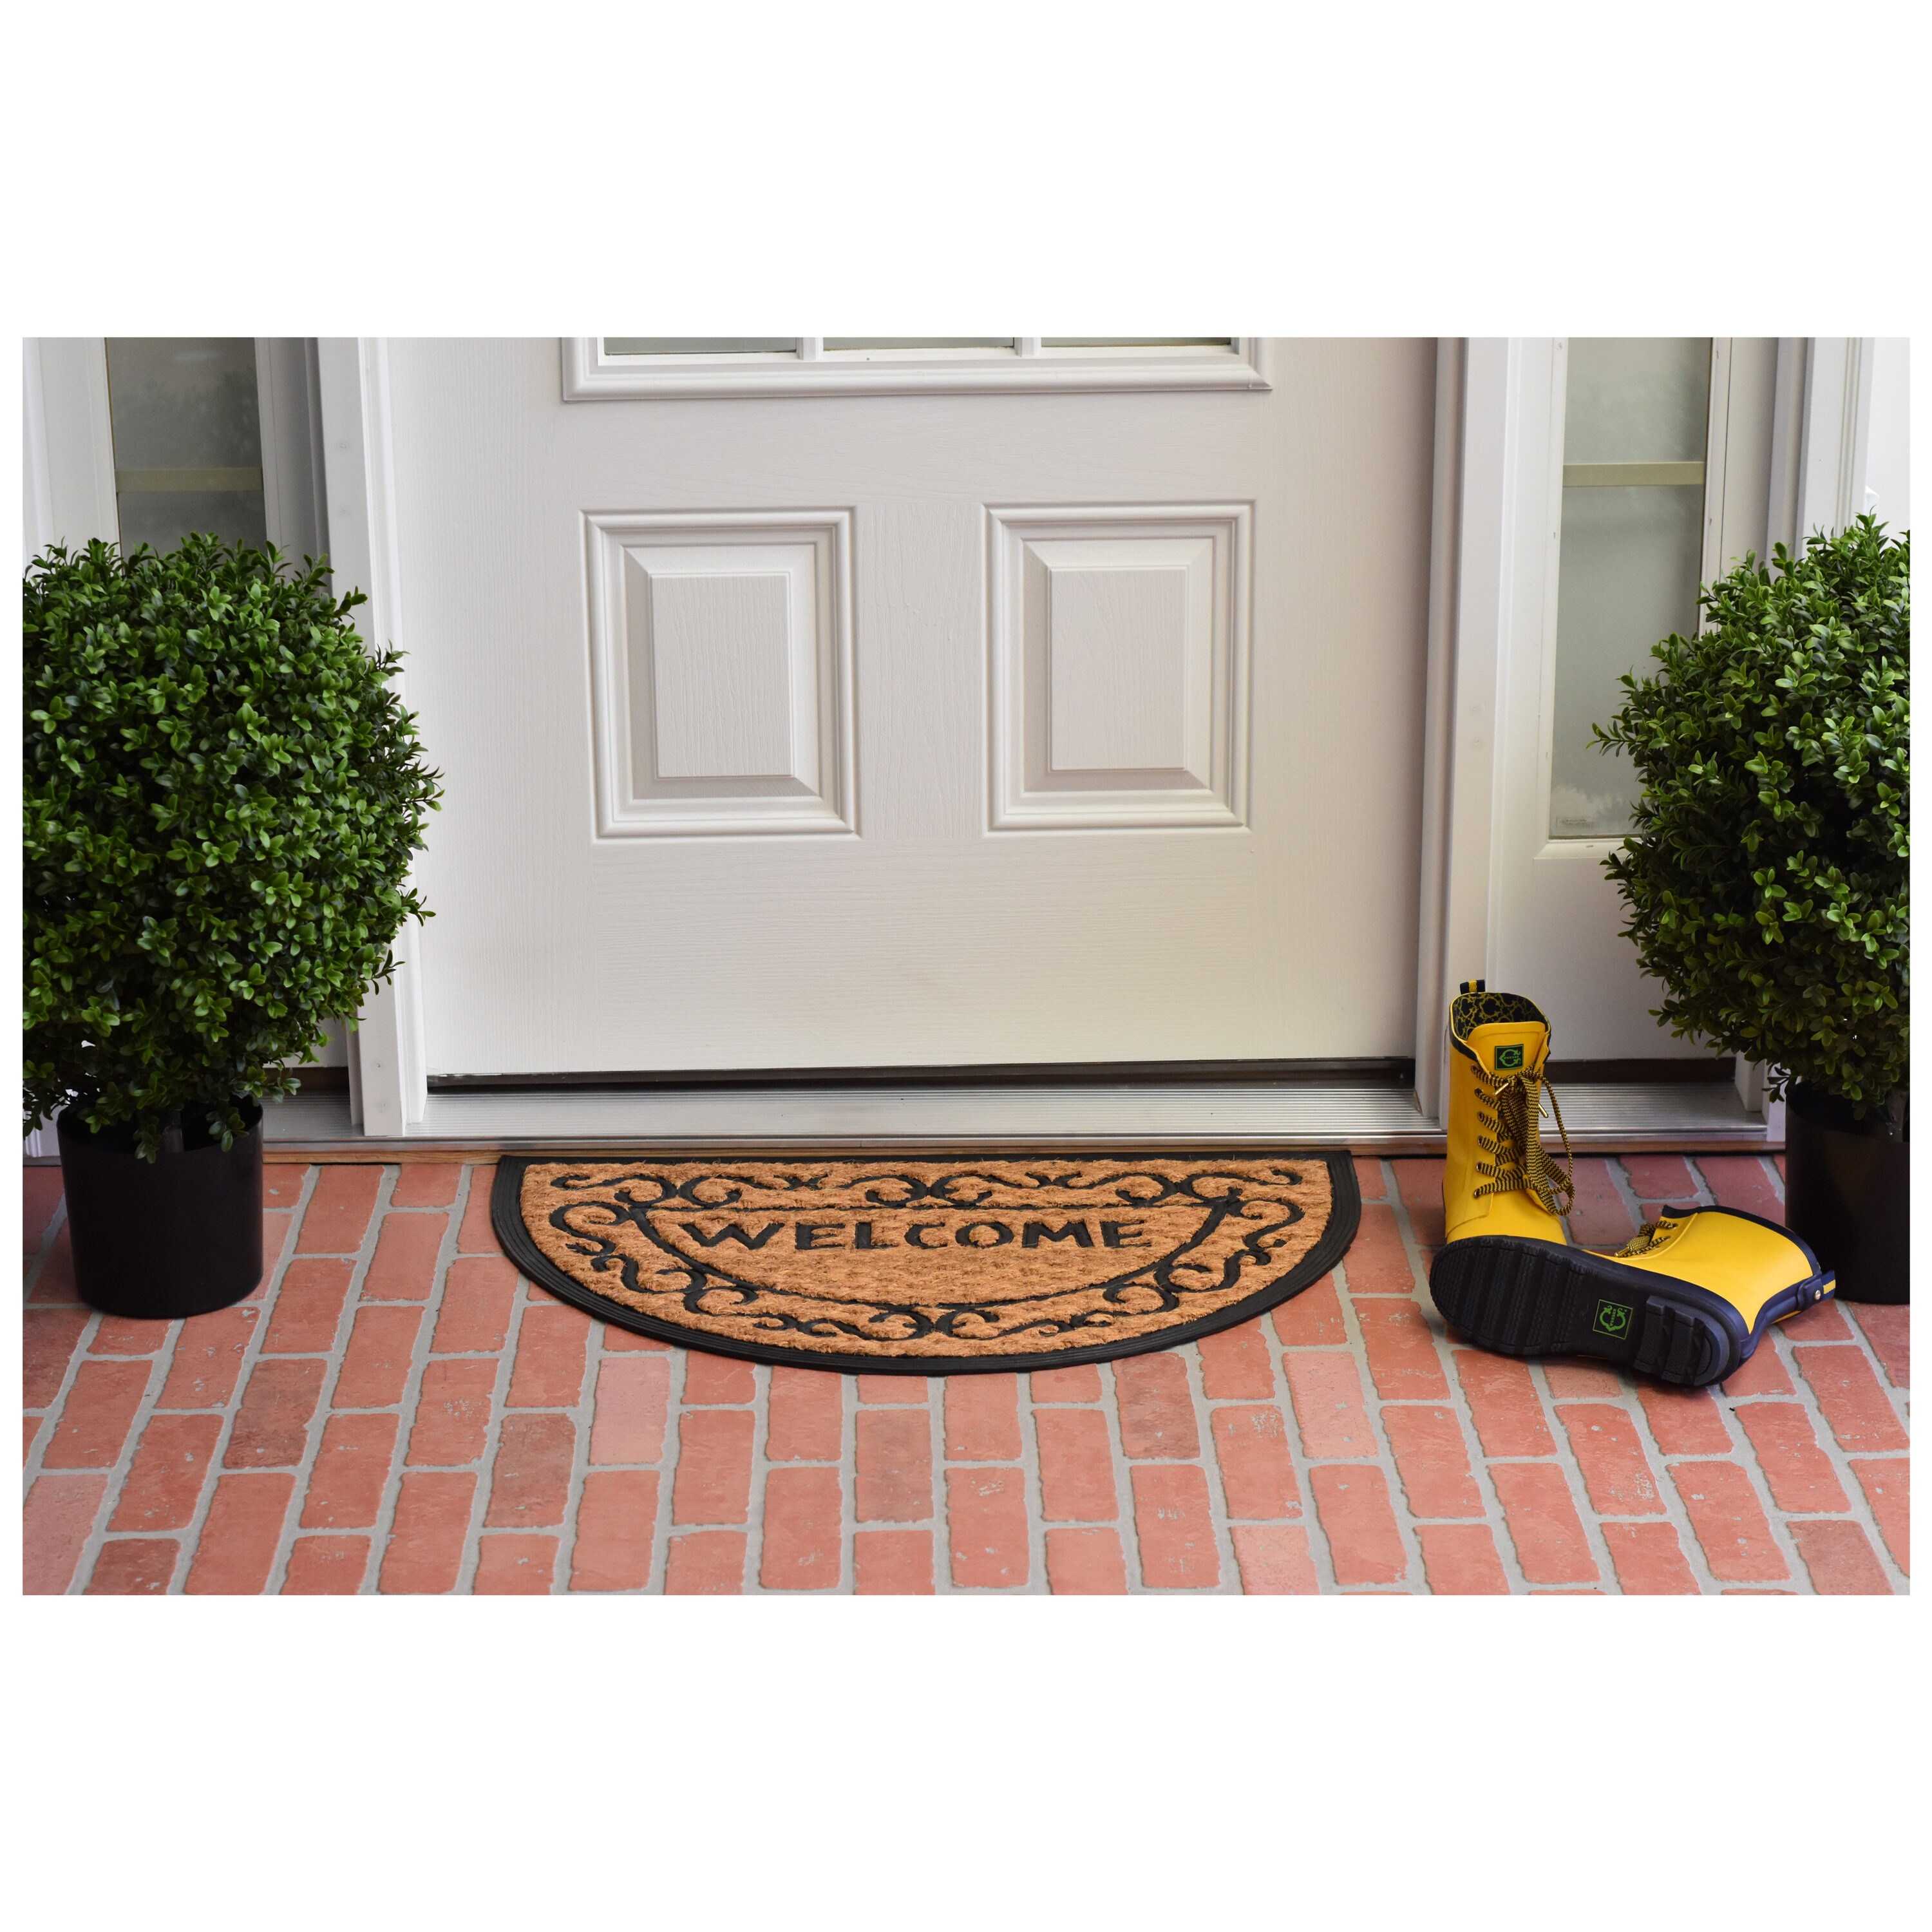 Half-Round Coir Rubber Entryway Thin Doormat Low Profile All Season  Decorative